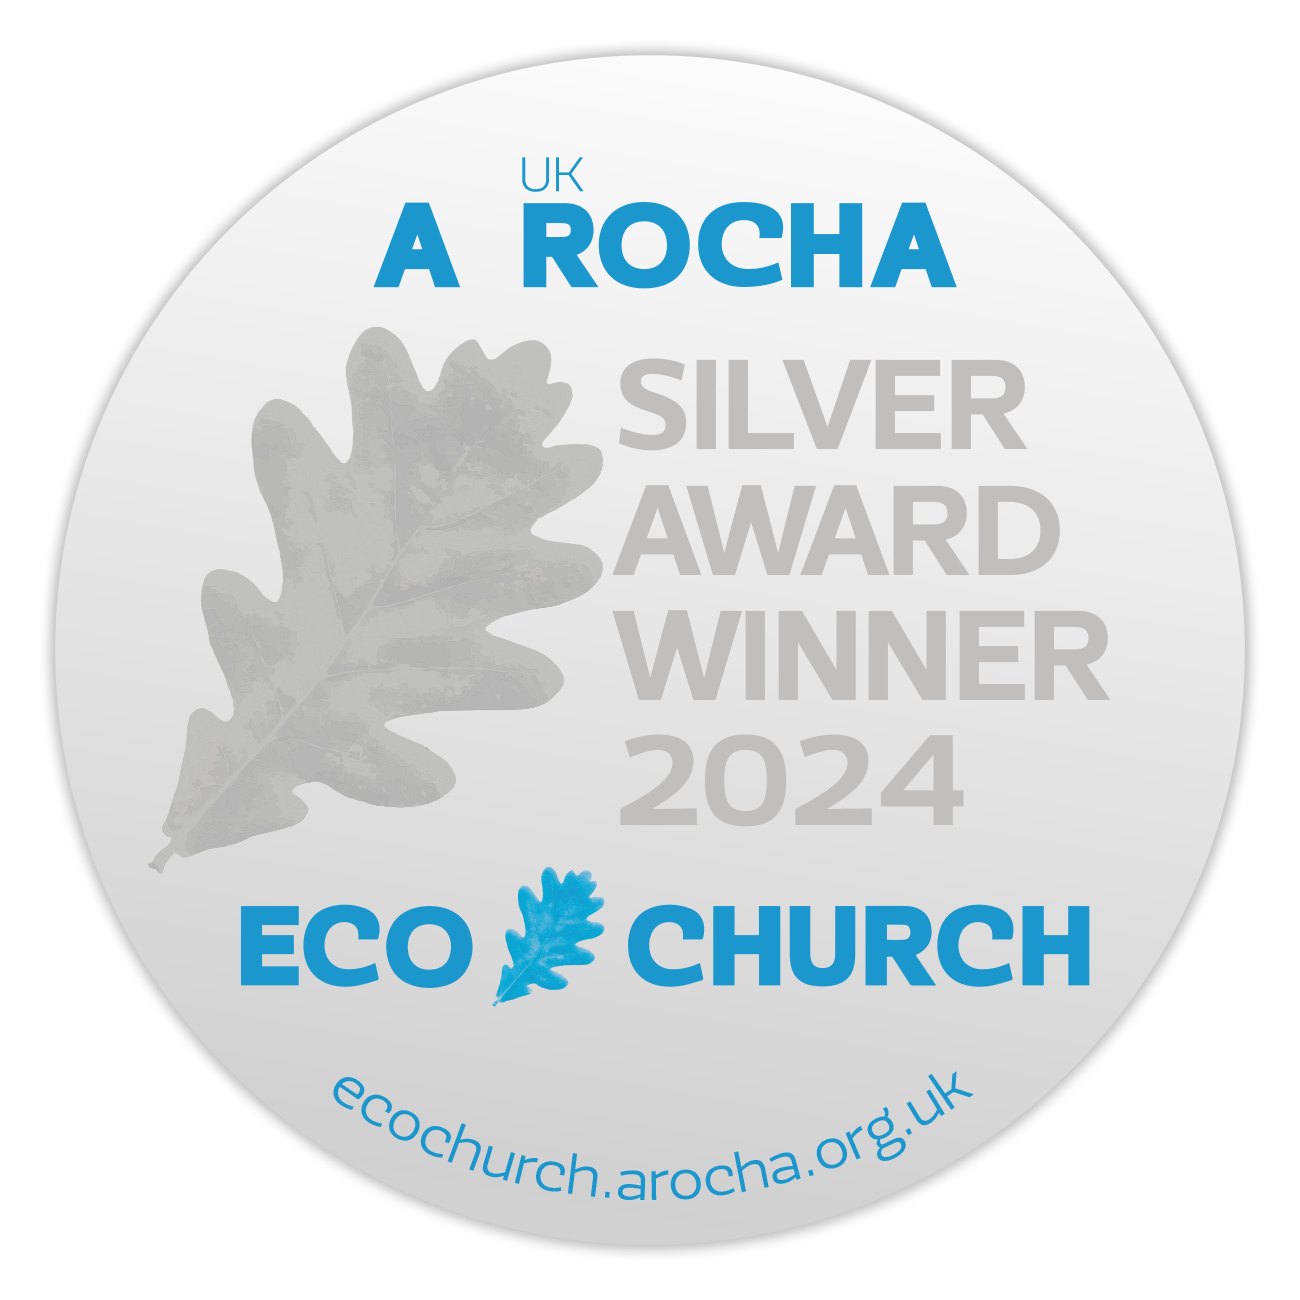 A Rocha UK Eco Church Silver Award Winner 2024